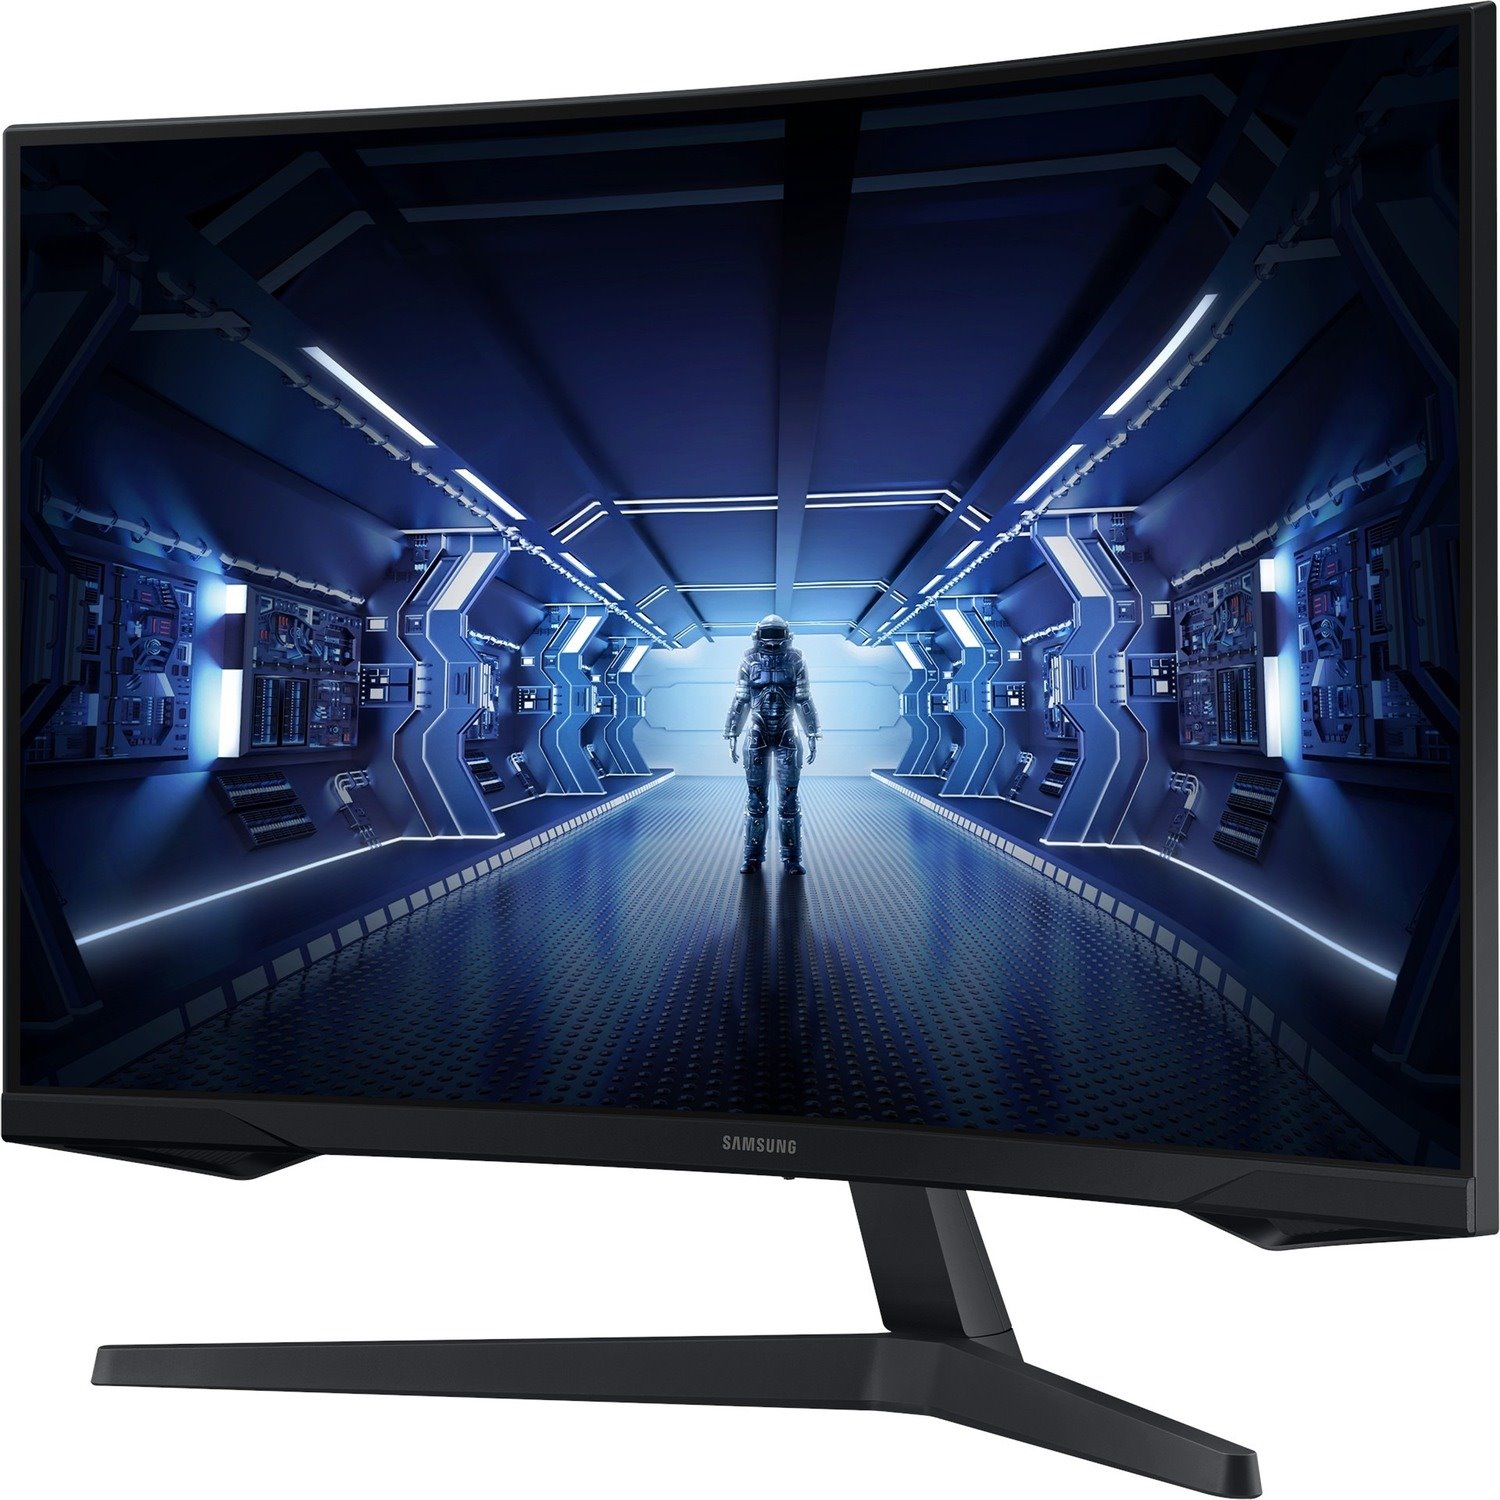 Samsung Odyssey G5 C32G55TQBU 32" Class WQHD Curved Screen Gaming LCD Monitor - 16:9 - Black